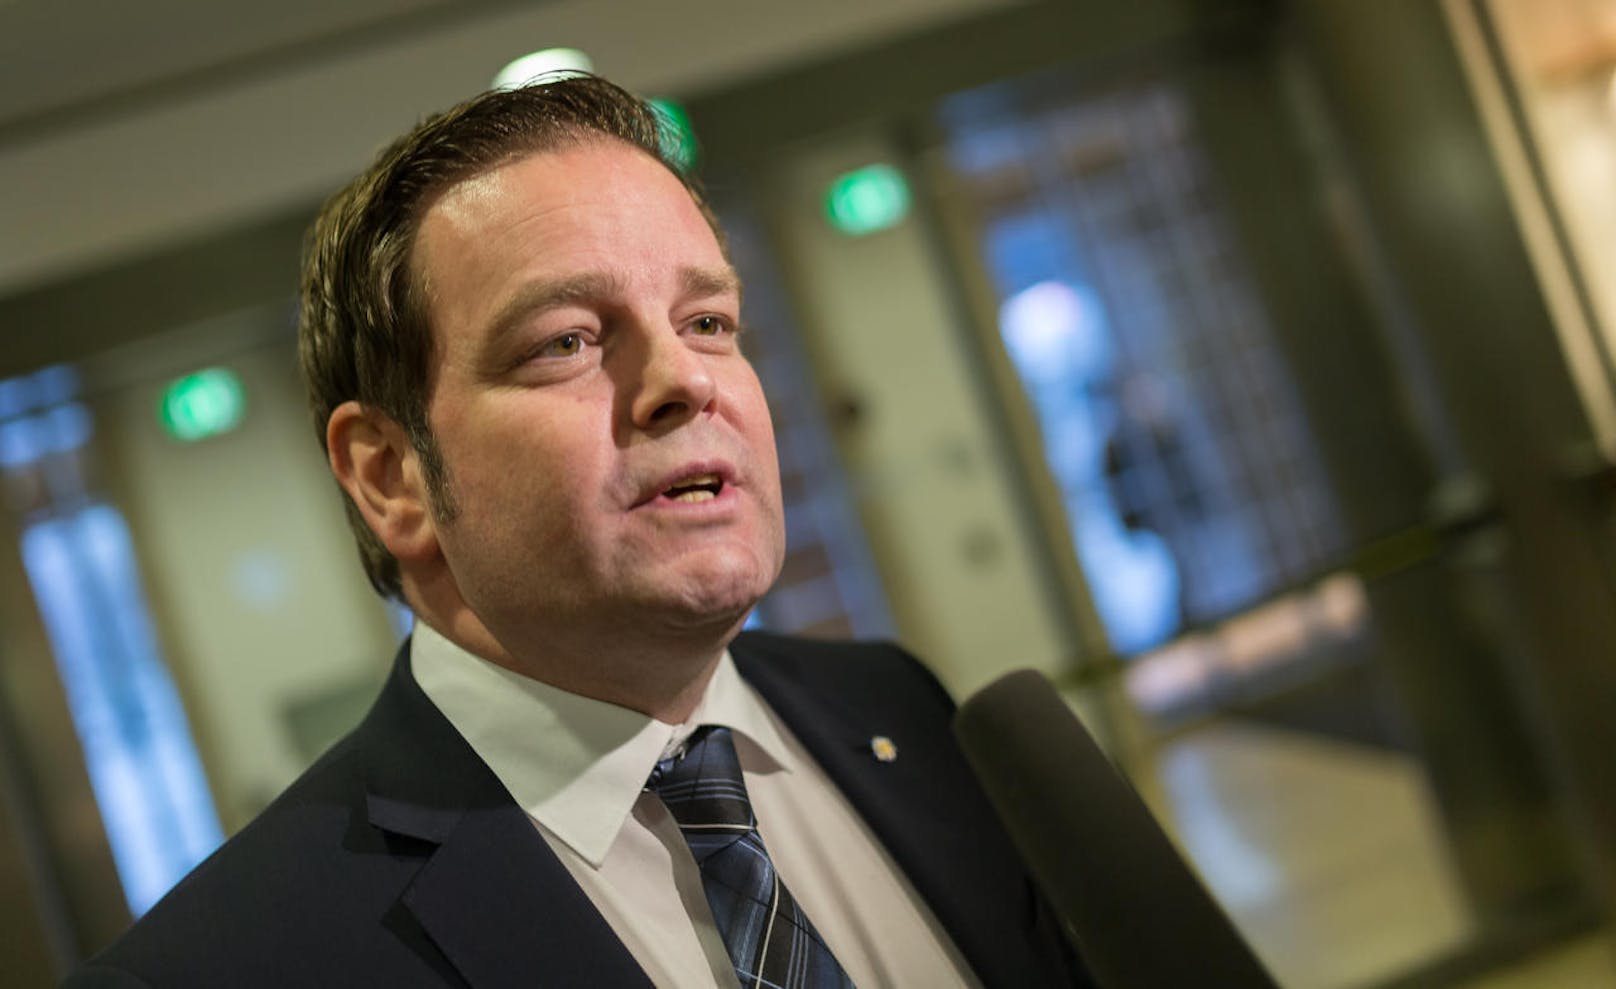 Tirols FPÖ-Chef Markus Abwerzger (FPÖ) sprach sich bereits für eine "klare Trennung" aus.